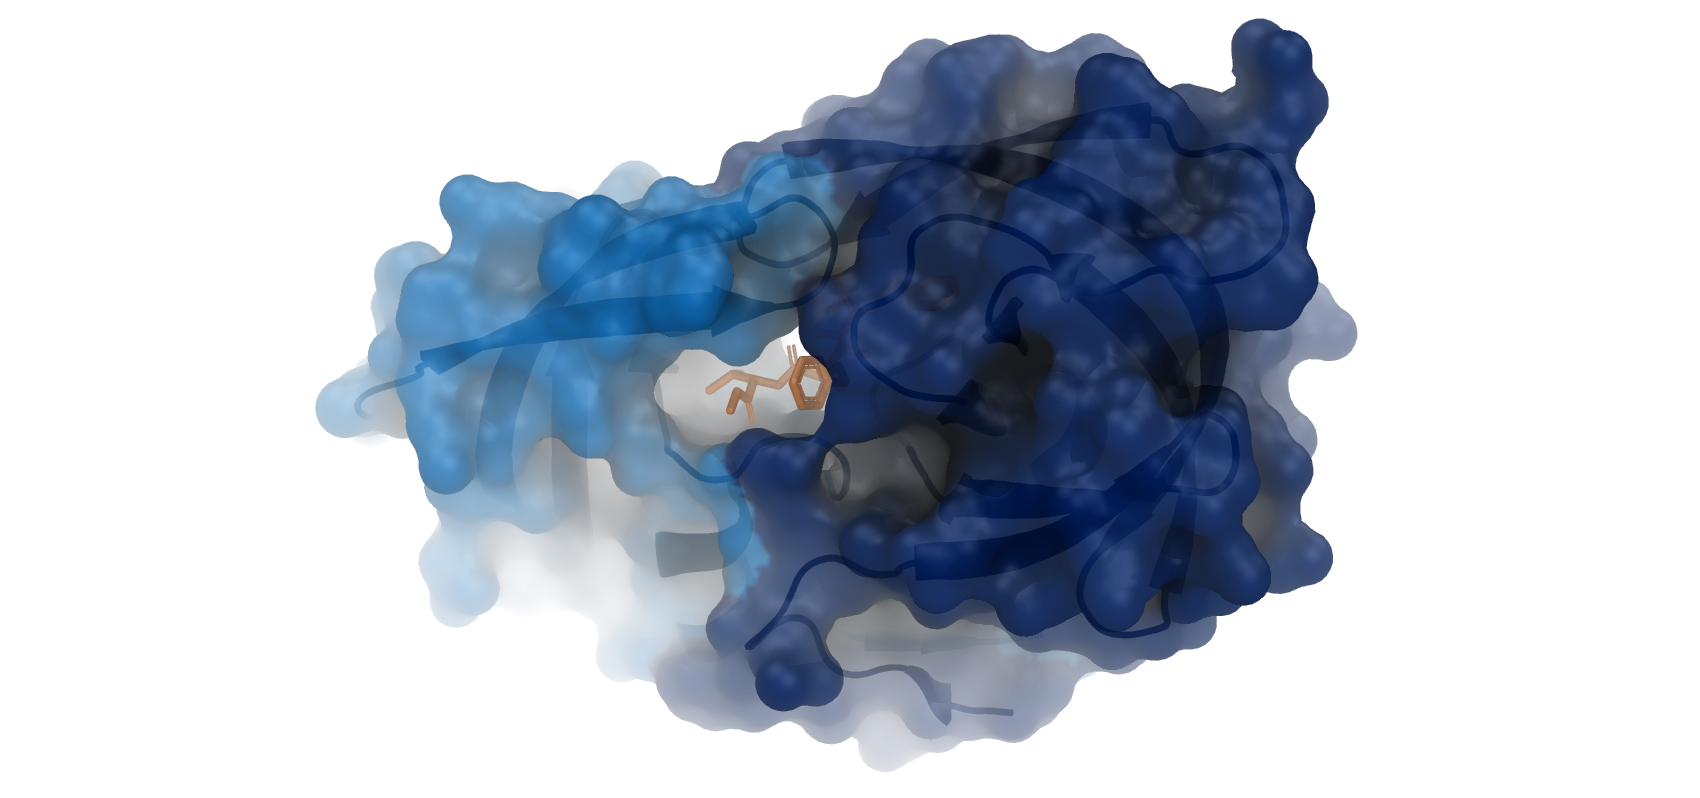 blue protein with orange inhibitor